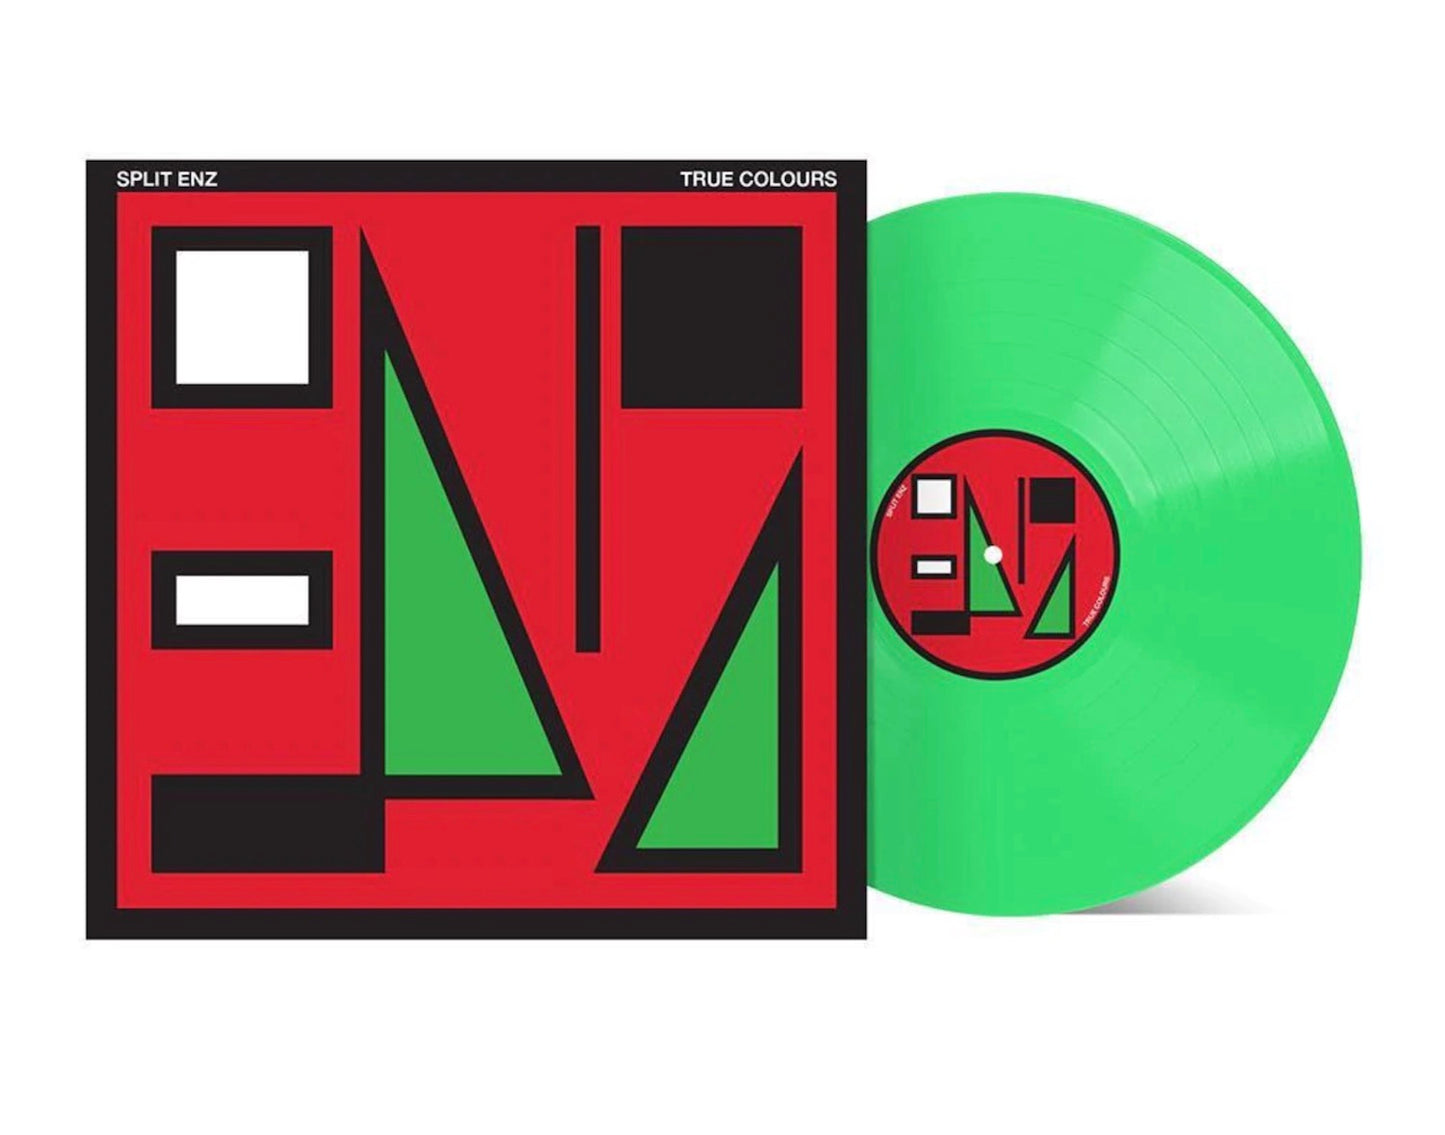 Split Enz - True Colours (40th Anniversary Edition) | Colour Vinyl LP 